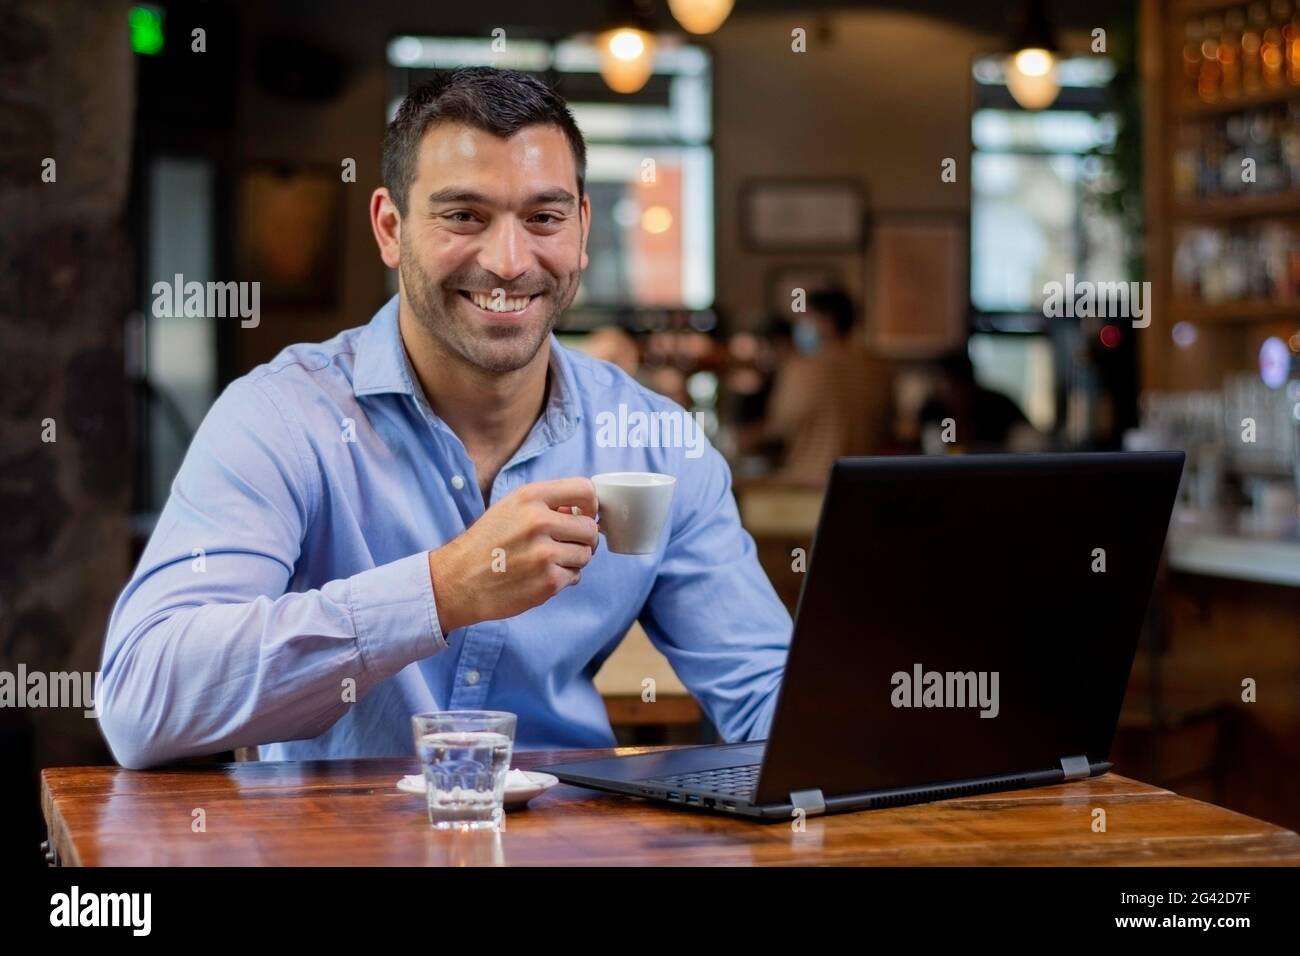 Ein junger latein in einem Café, der an einem Tisch sitzt, Kaffee trinkt und sein Smartphone überprüft, lächelnd auf die Kamera schaut Stockfoto